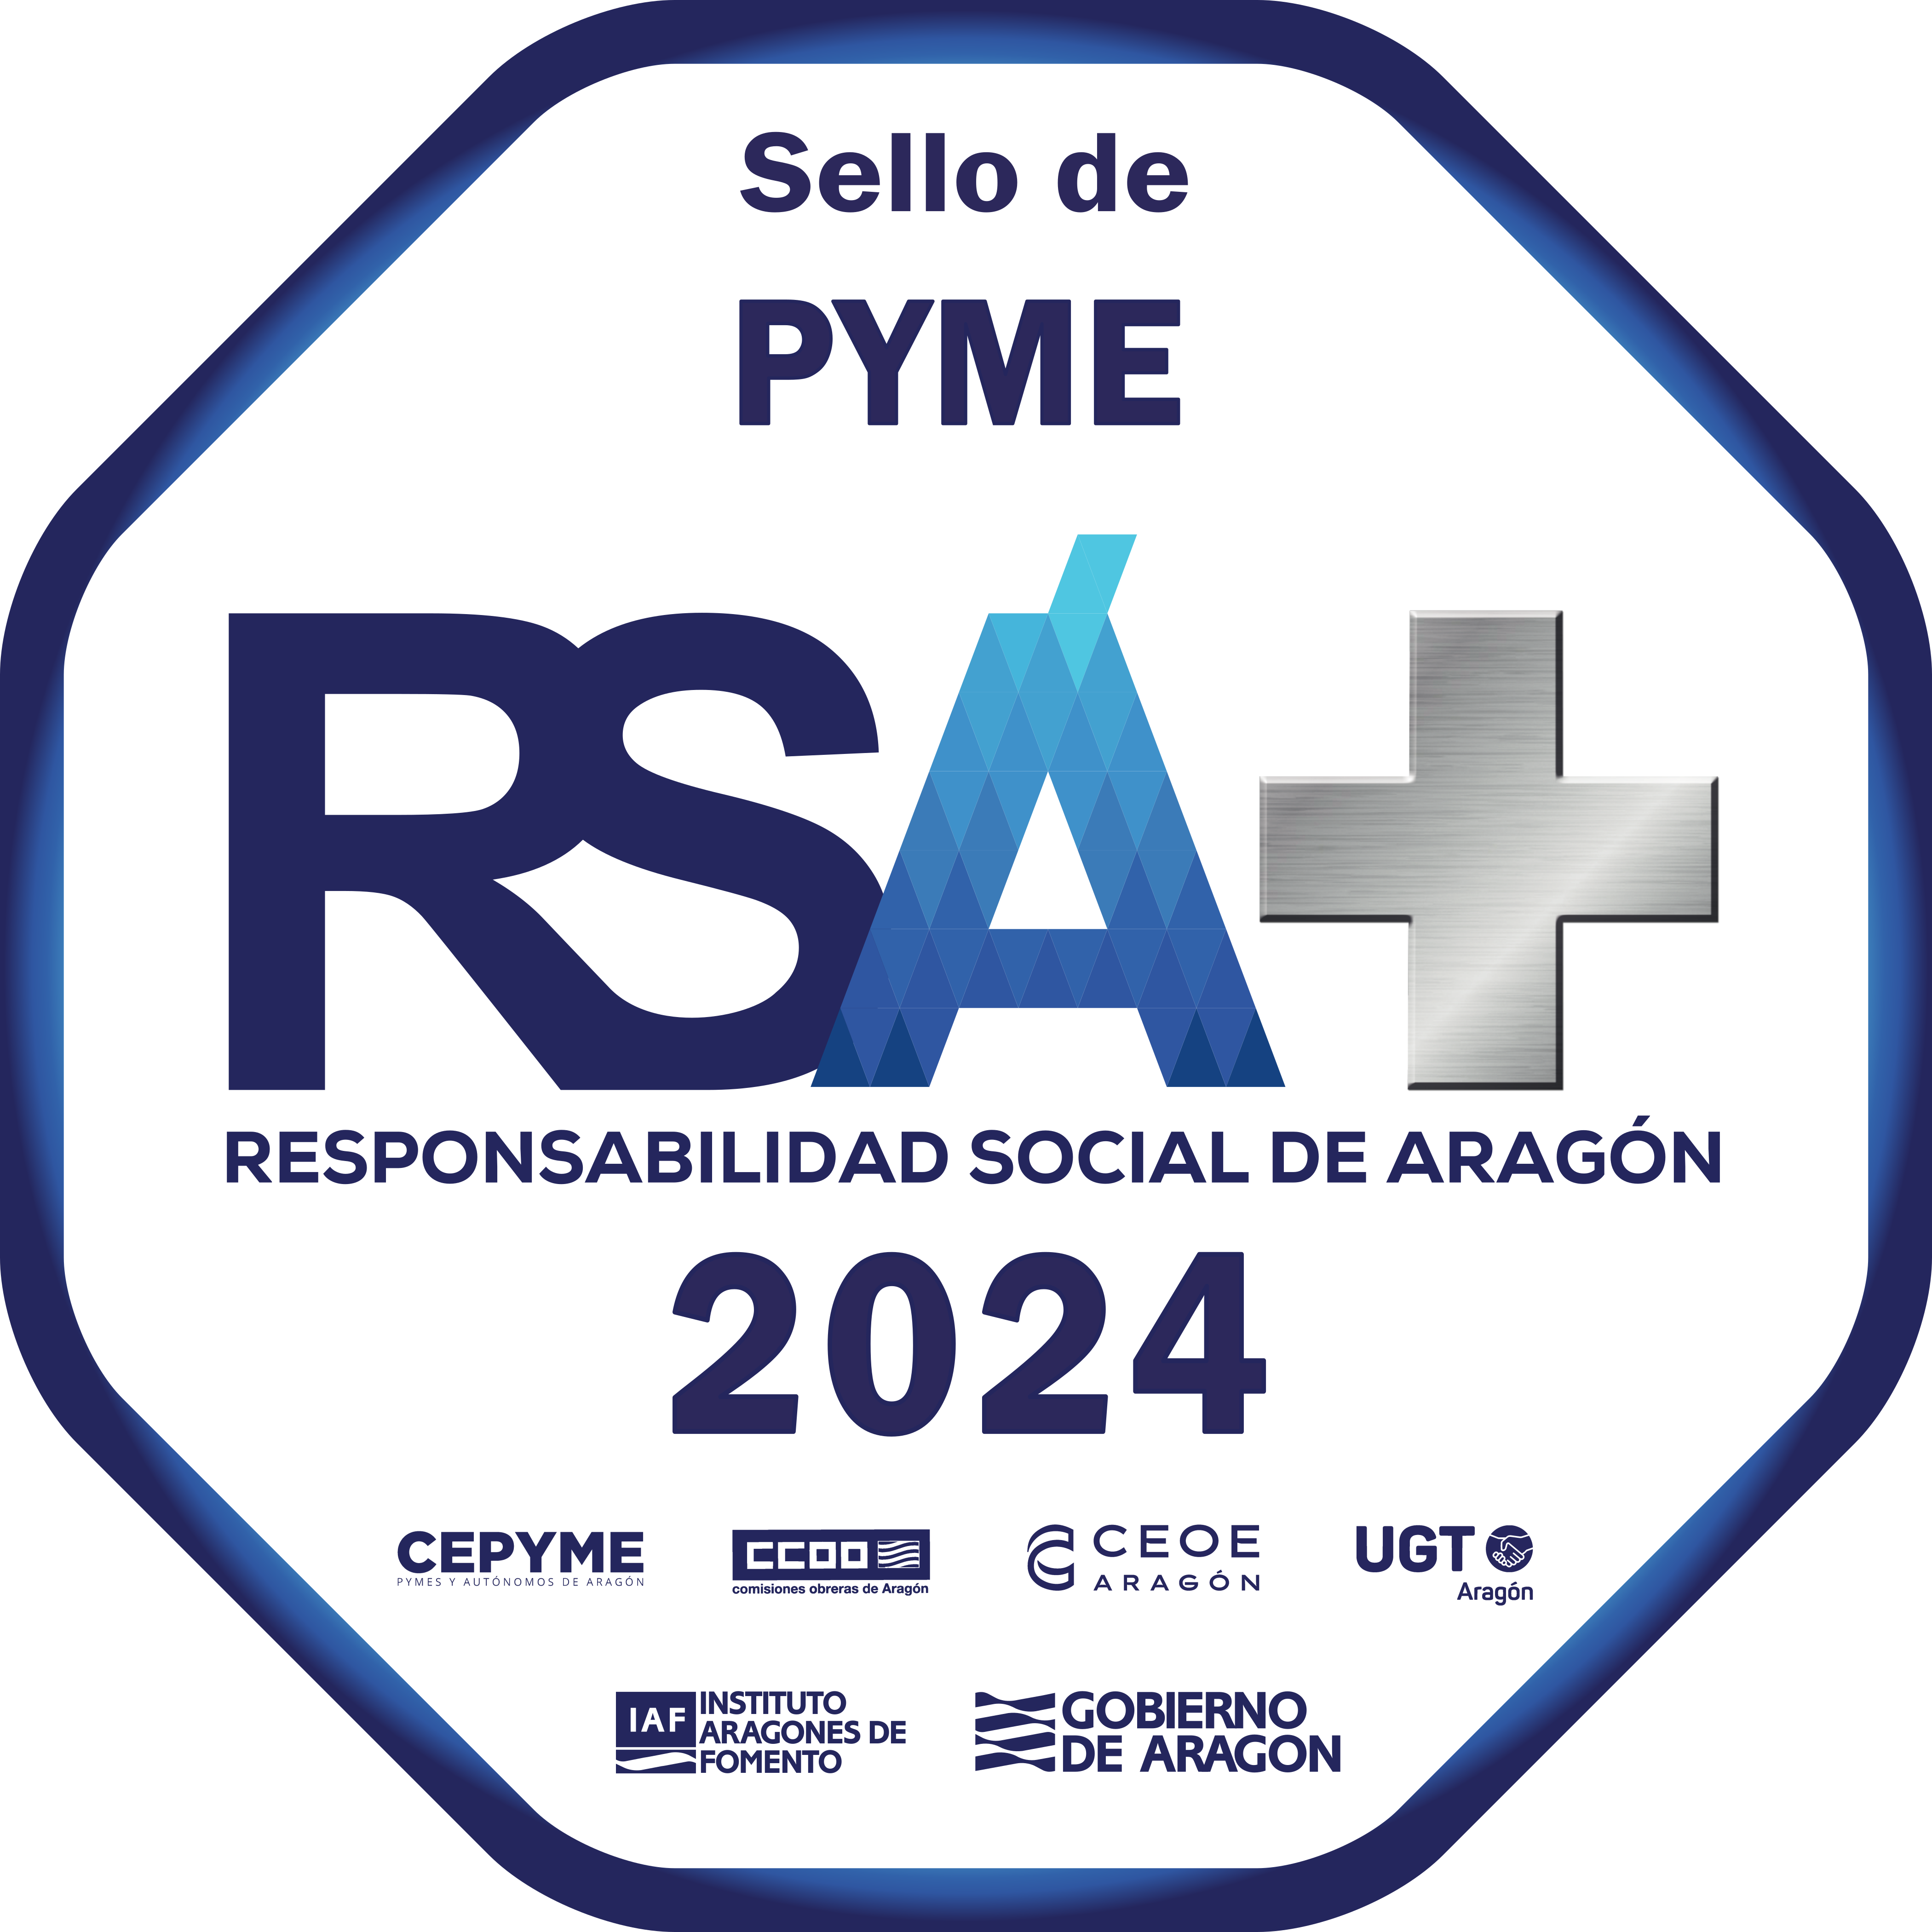 Sello PYME RSA+ Aragón 2024